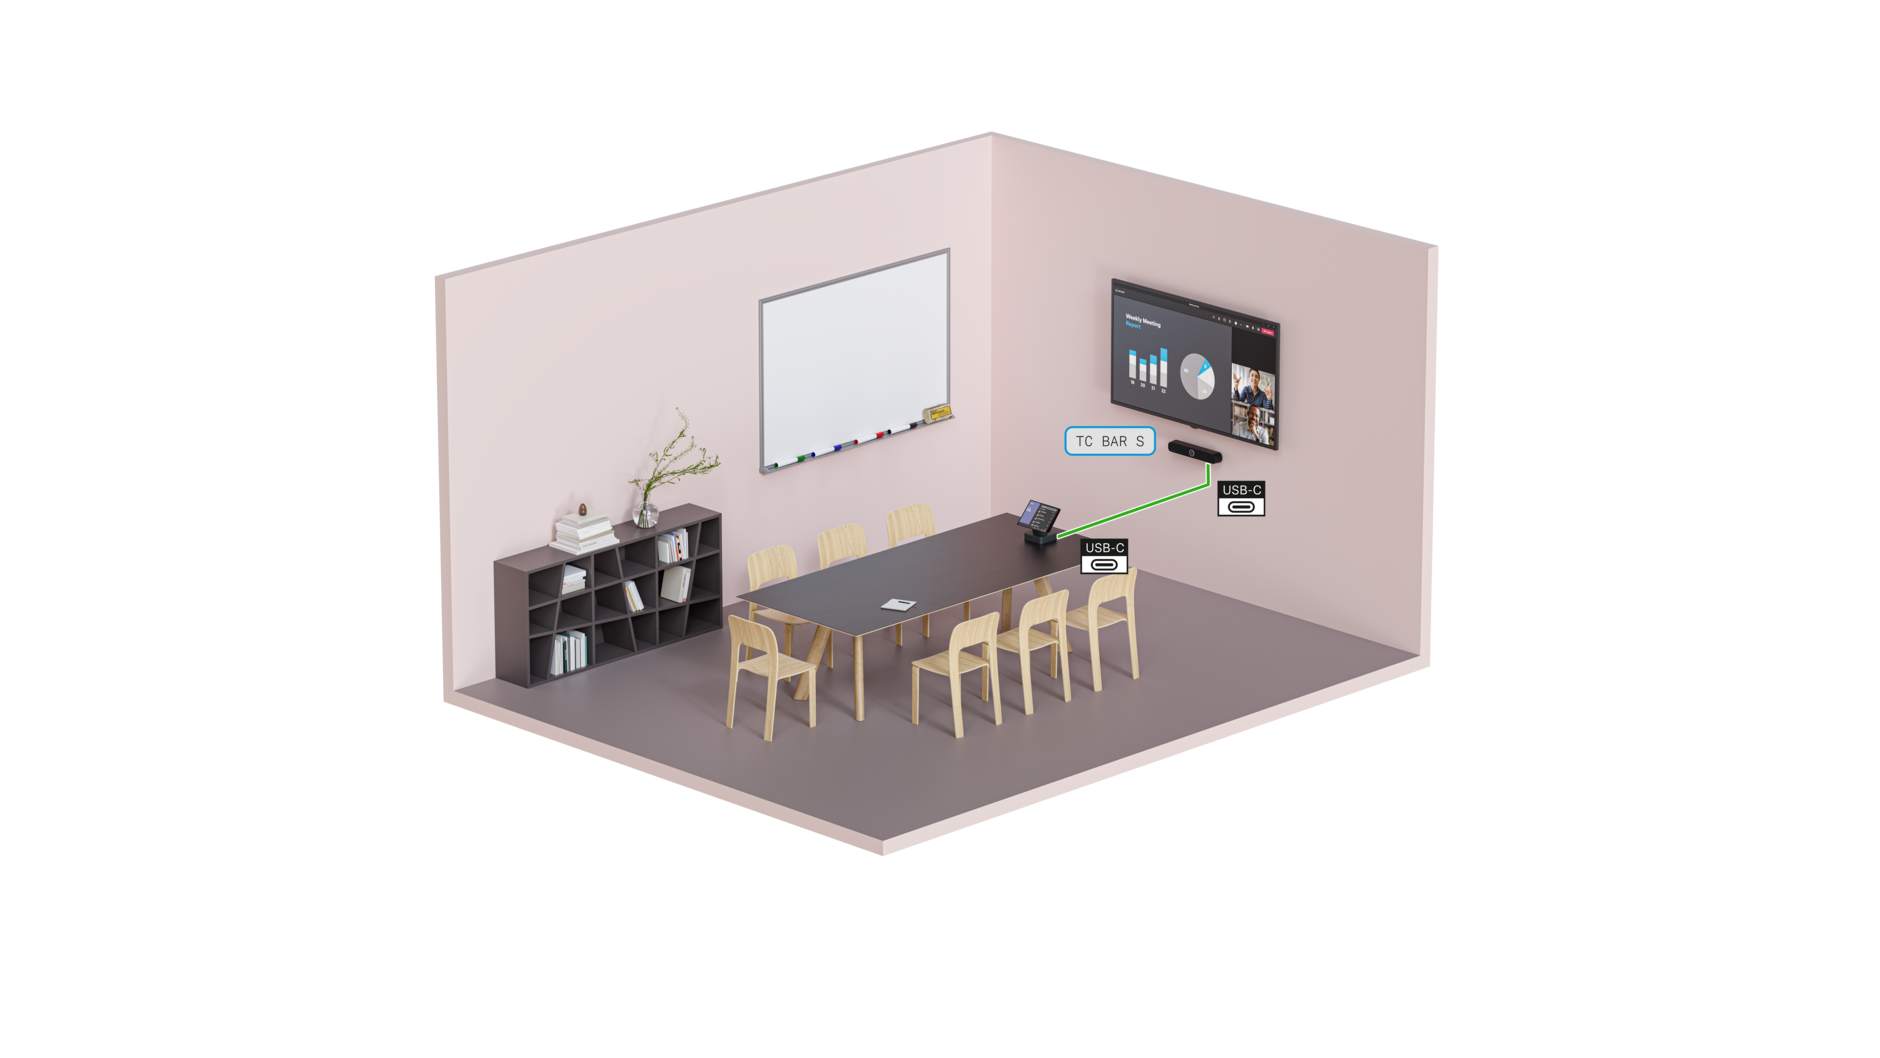 TC Bar S － 小規模会議室で使用されるMicrosoft Teams など、主要な UC プラットフォームとの互換性